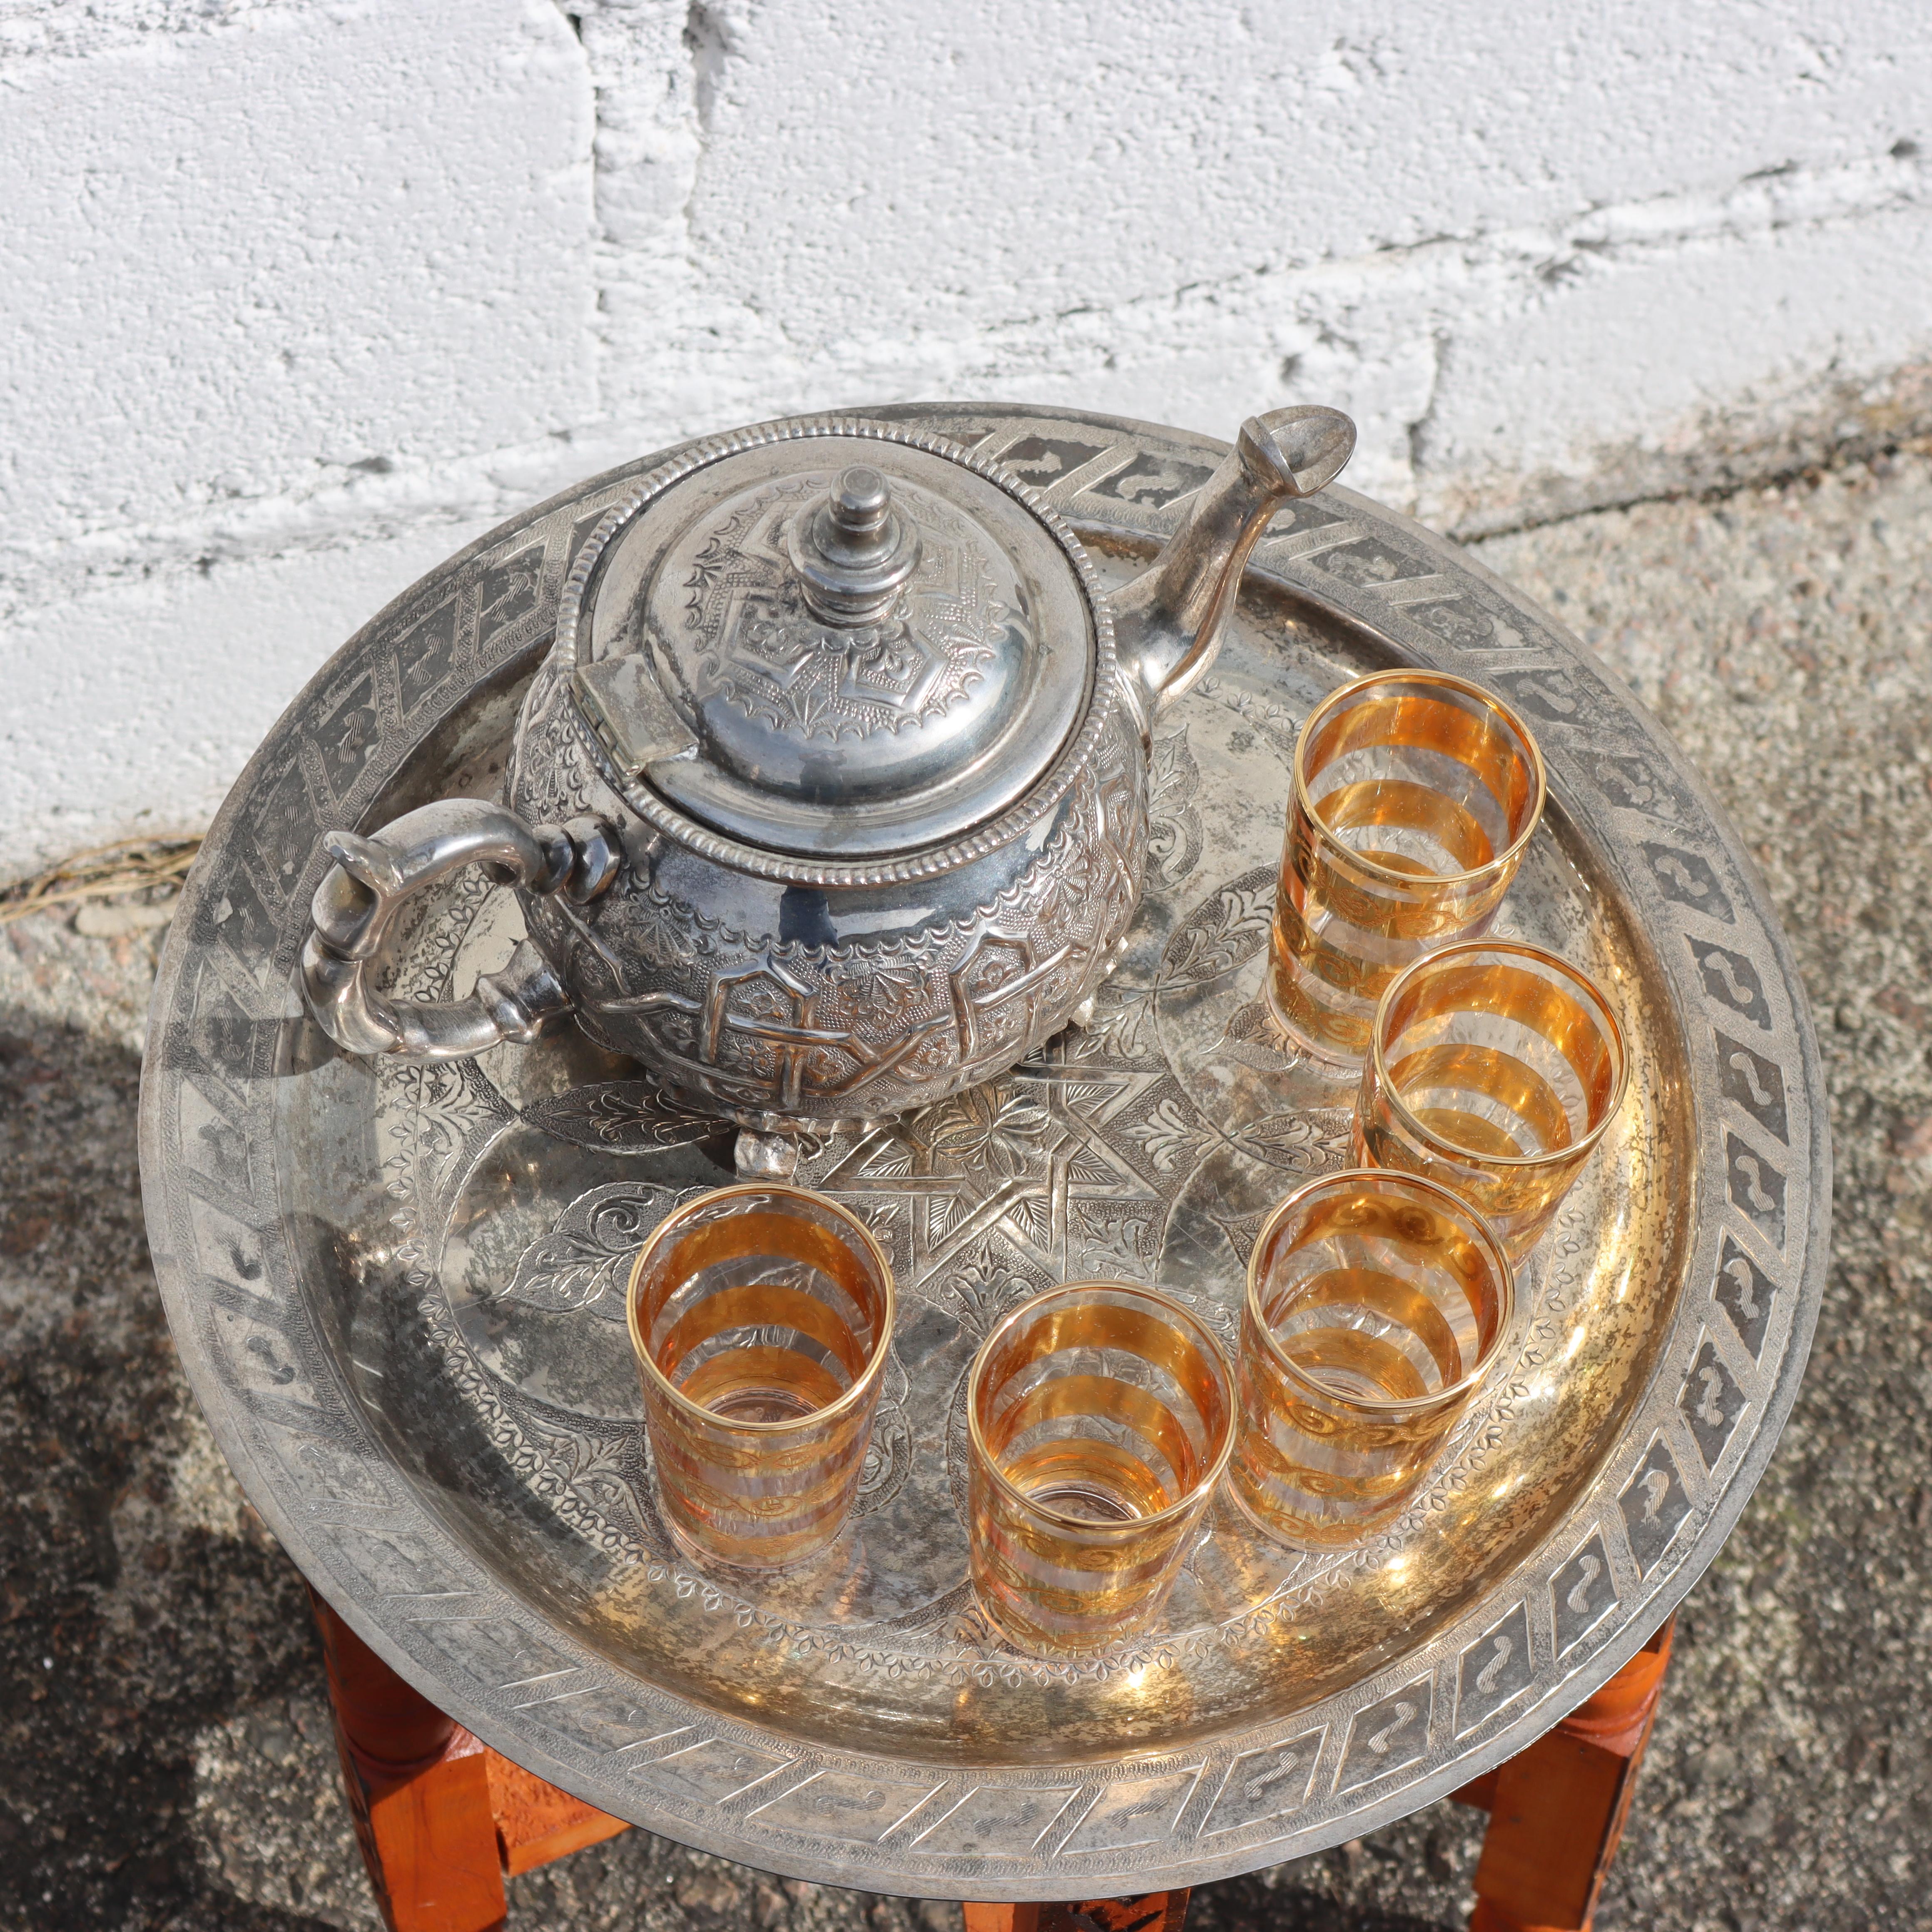 Cette exquise table de cérémonie du thé marocaine des années 1980 présente un plateau massif et ornementé en laiton argenté, orné de motifs gravés de manière complexe. 
L'assiette repose sur une base pliante magnifiquement sculptée à six pieds,